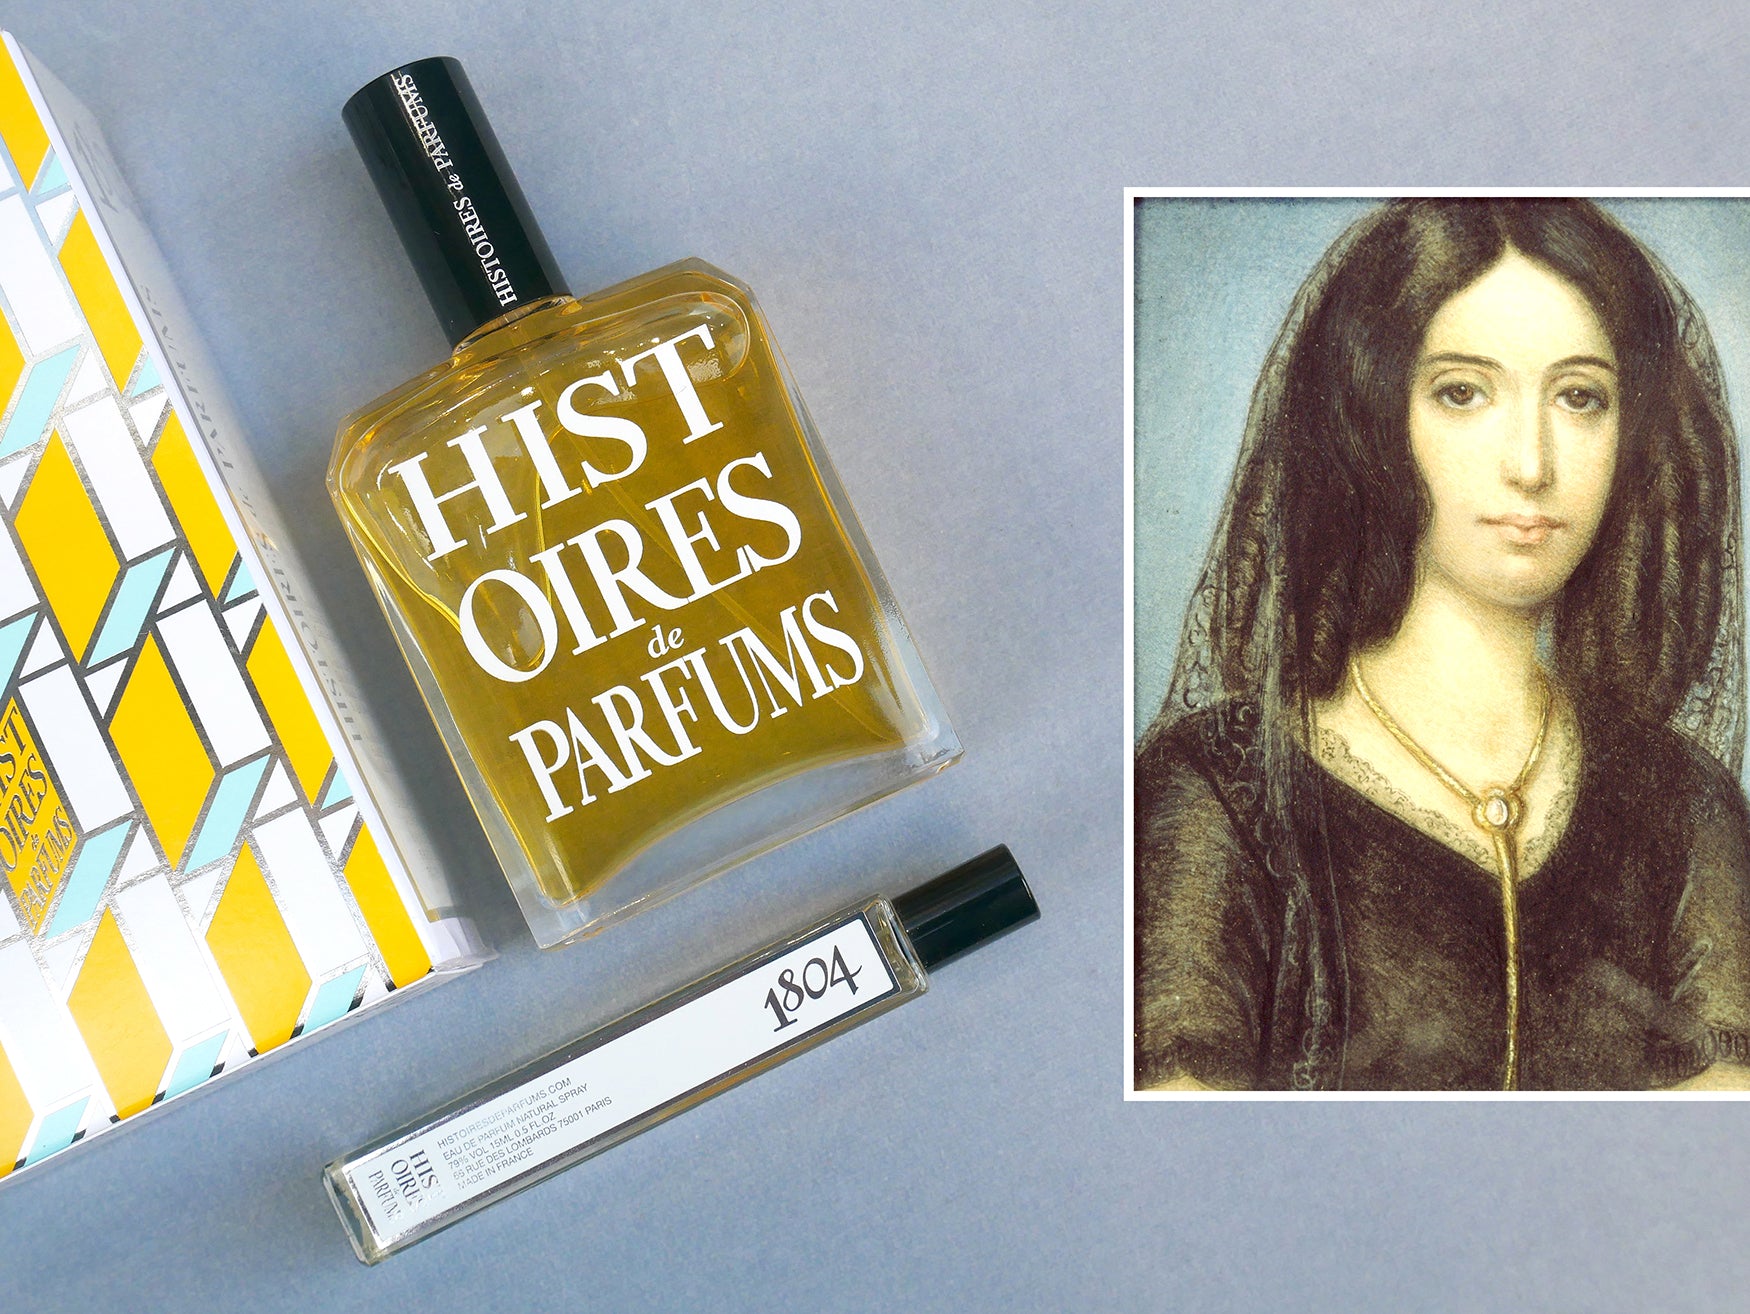 July 1, 1804: Georges Sand - Histoires de Parfums